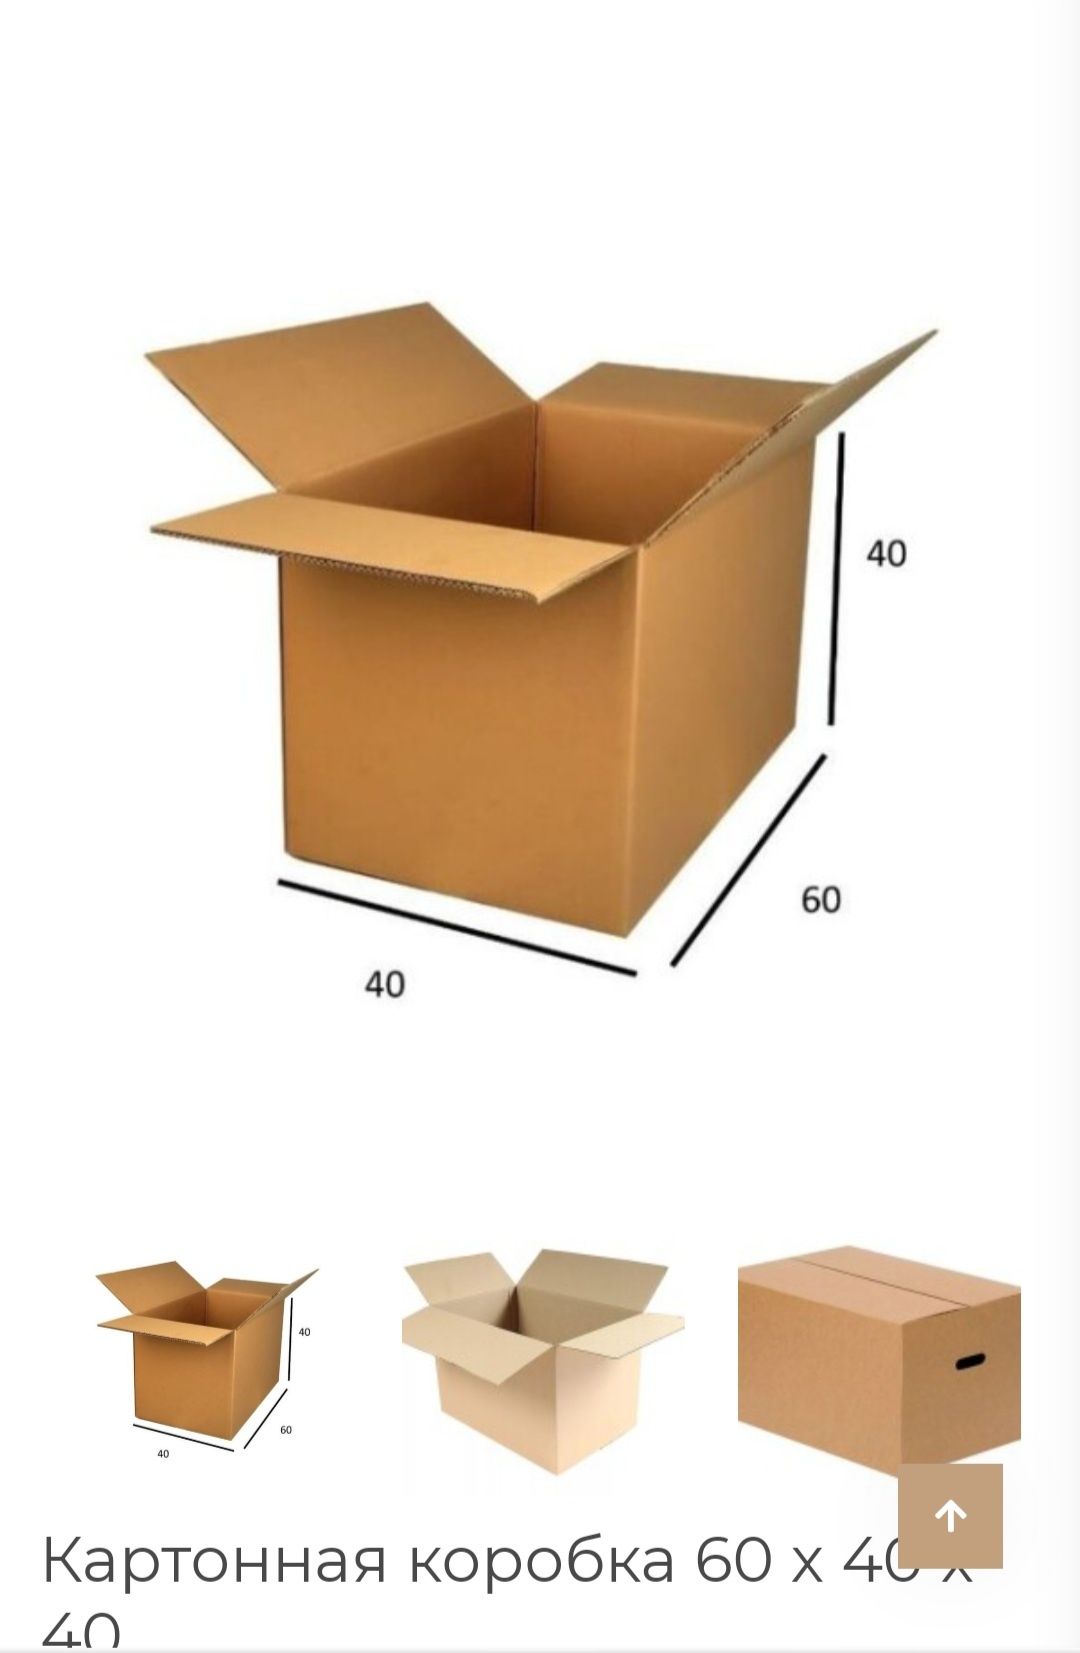 Продам коробки для переезда